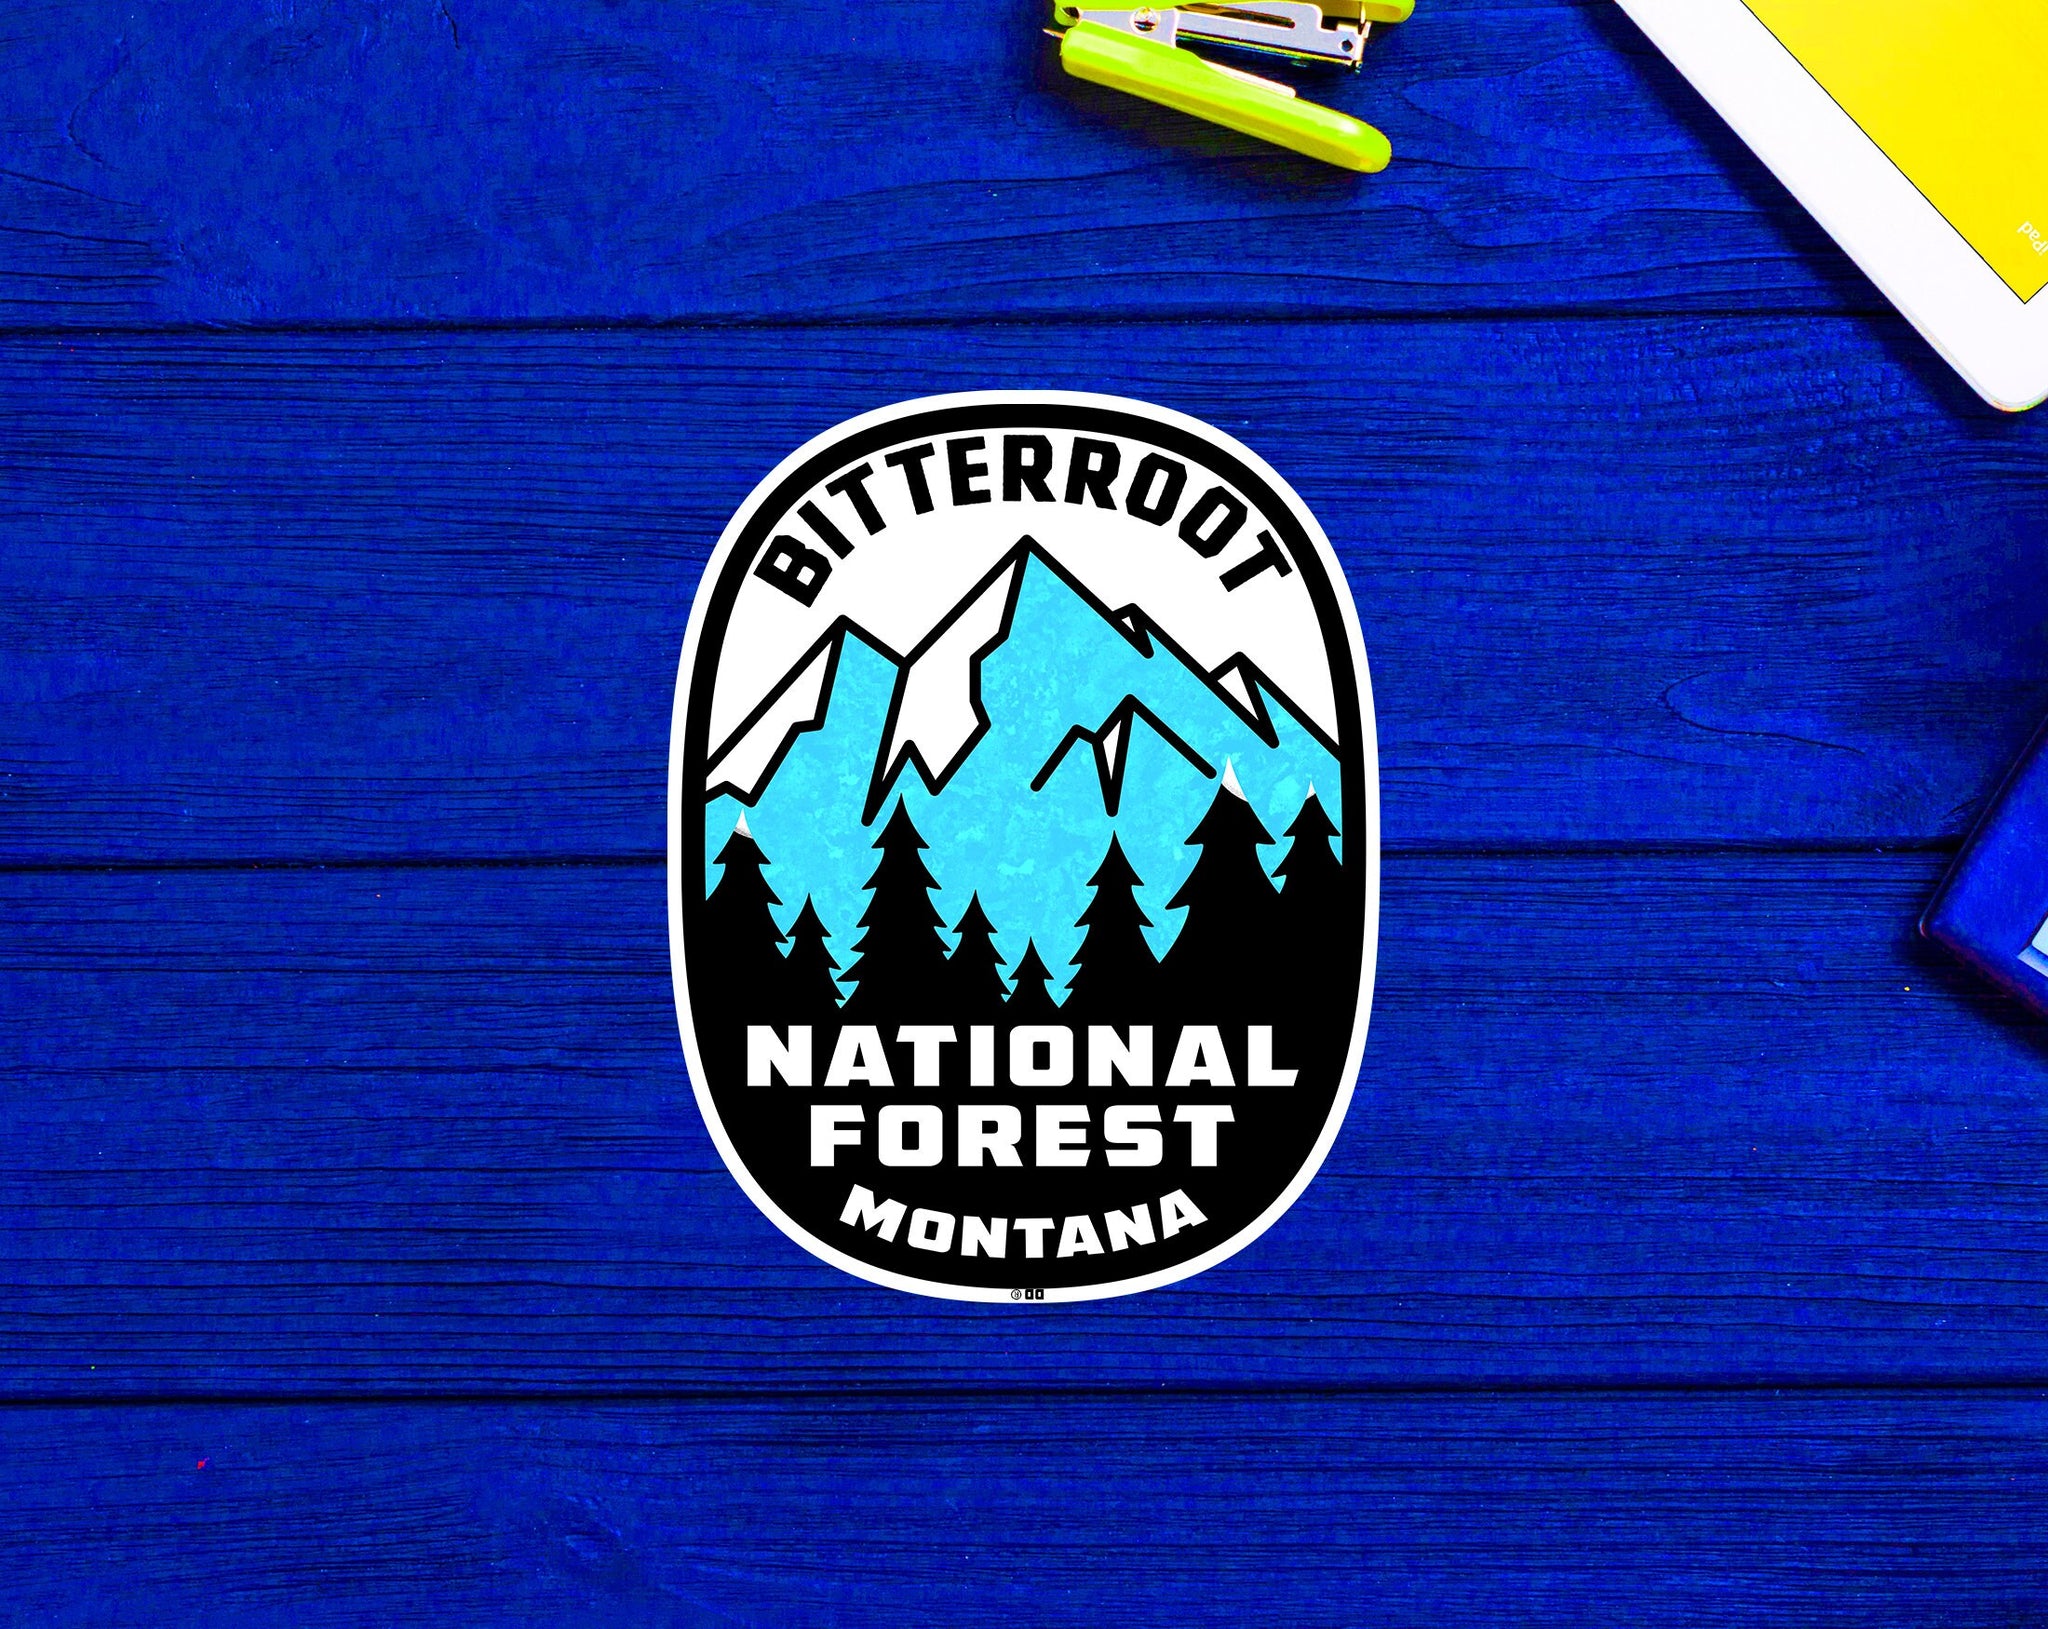 Bitterroot National Forest Montana Sticker 3.9"